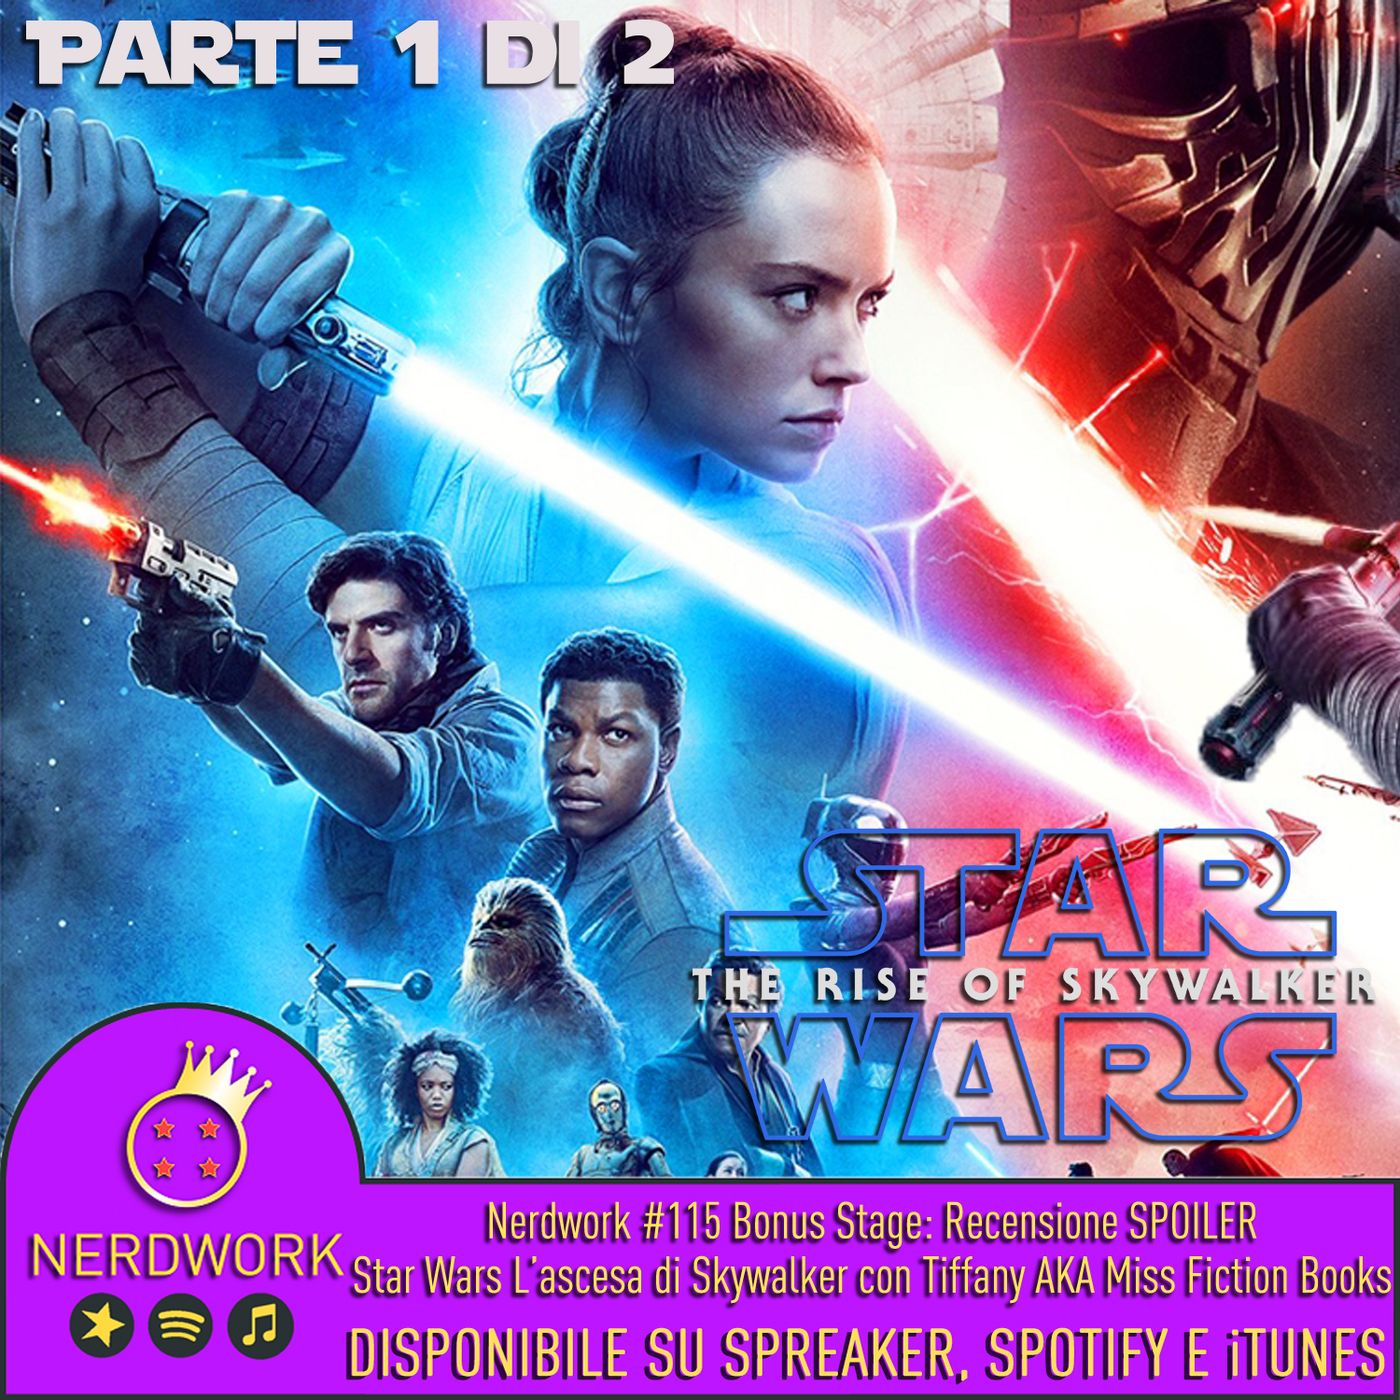 Nerdwork #115.1 - BONUS STAGE! Star Wars IX: Lato Oscuro o Lato Chiaro? | PARTE 1 | con Miss Fiction Books